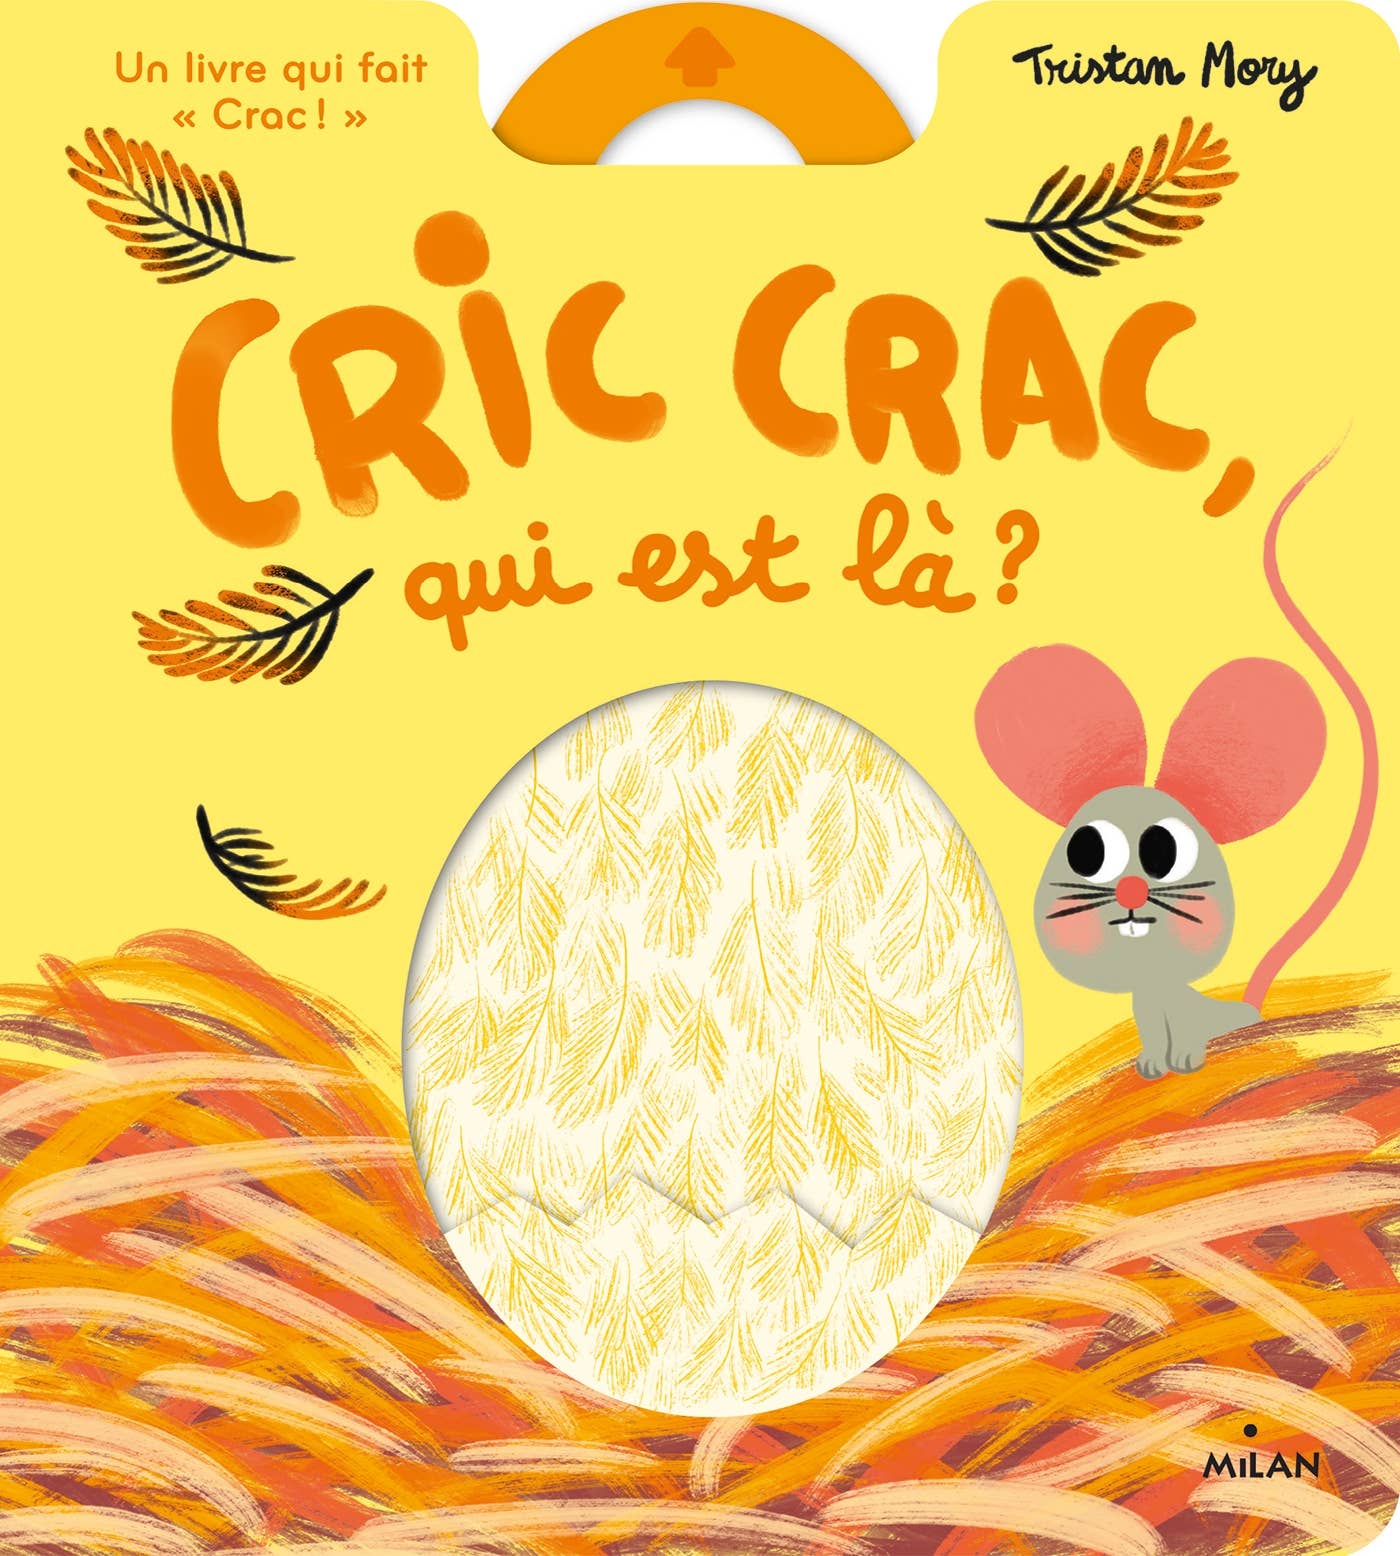 Livre "Cric Crac, qui est là?"